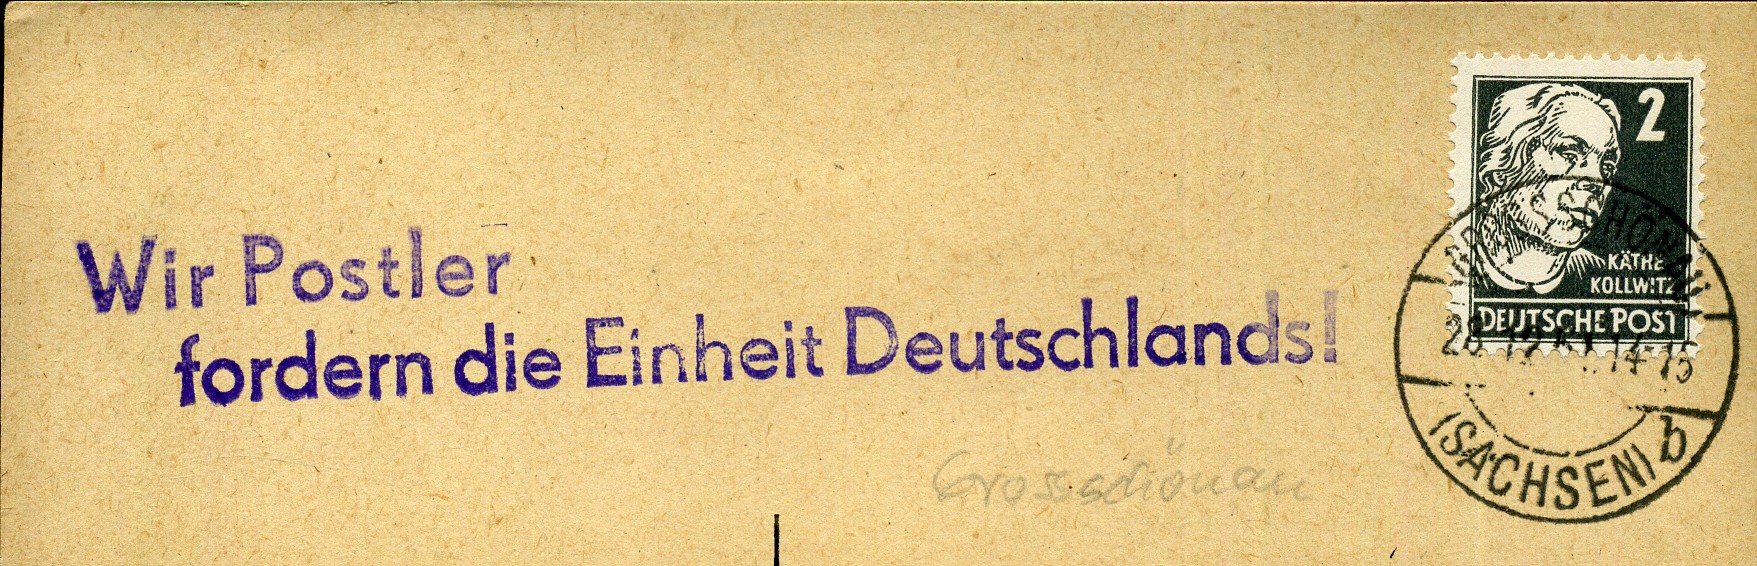 Wir Postler fordern die Einheit Deutschlands! - Handstempel - violett - Grossschönau